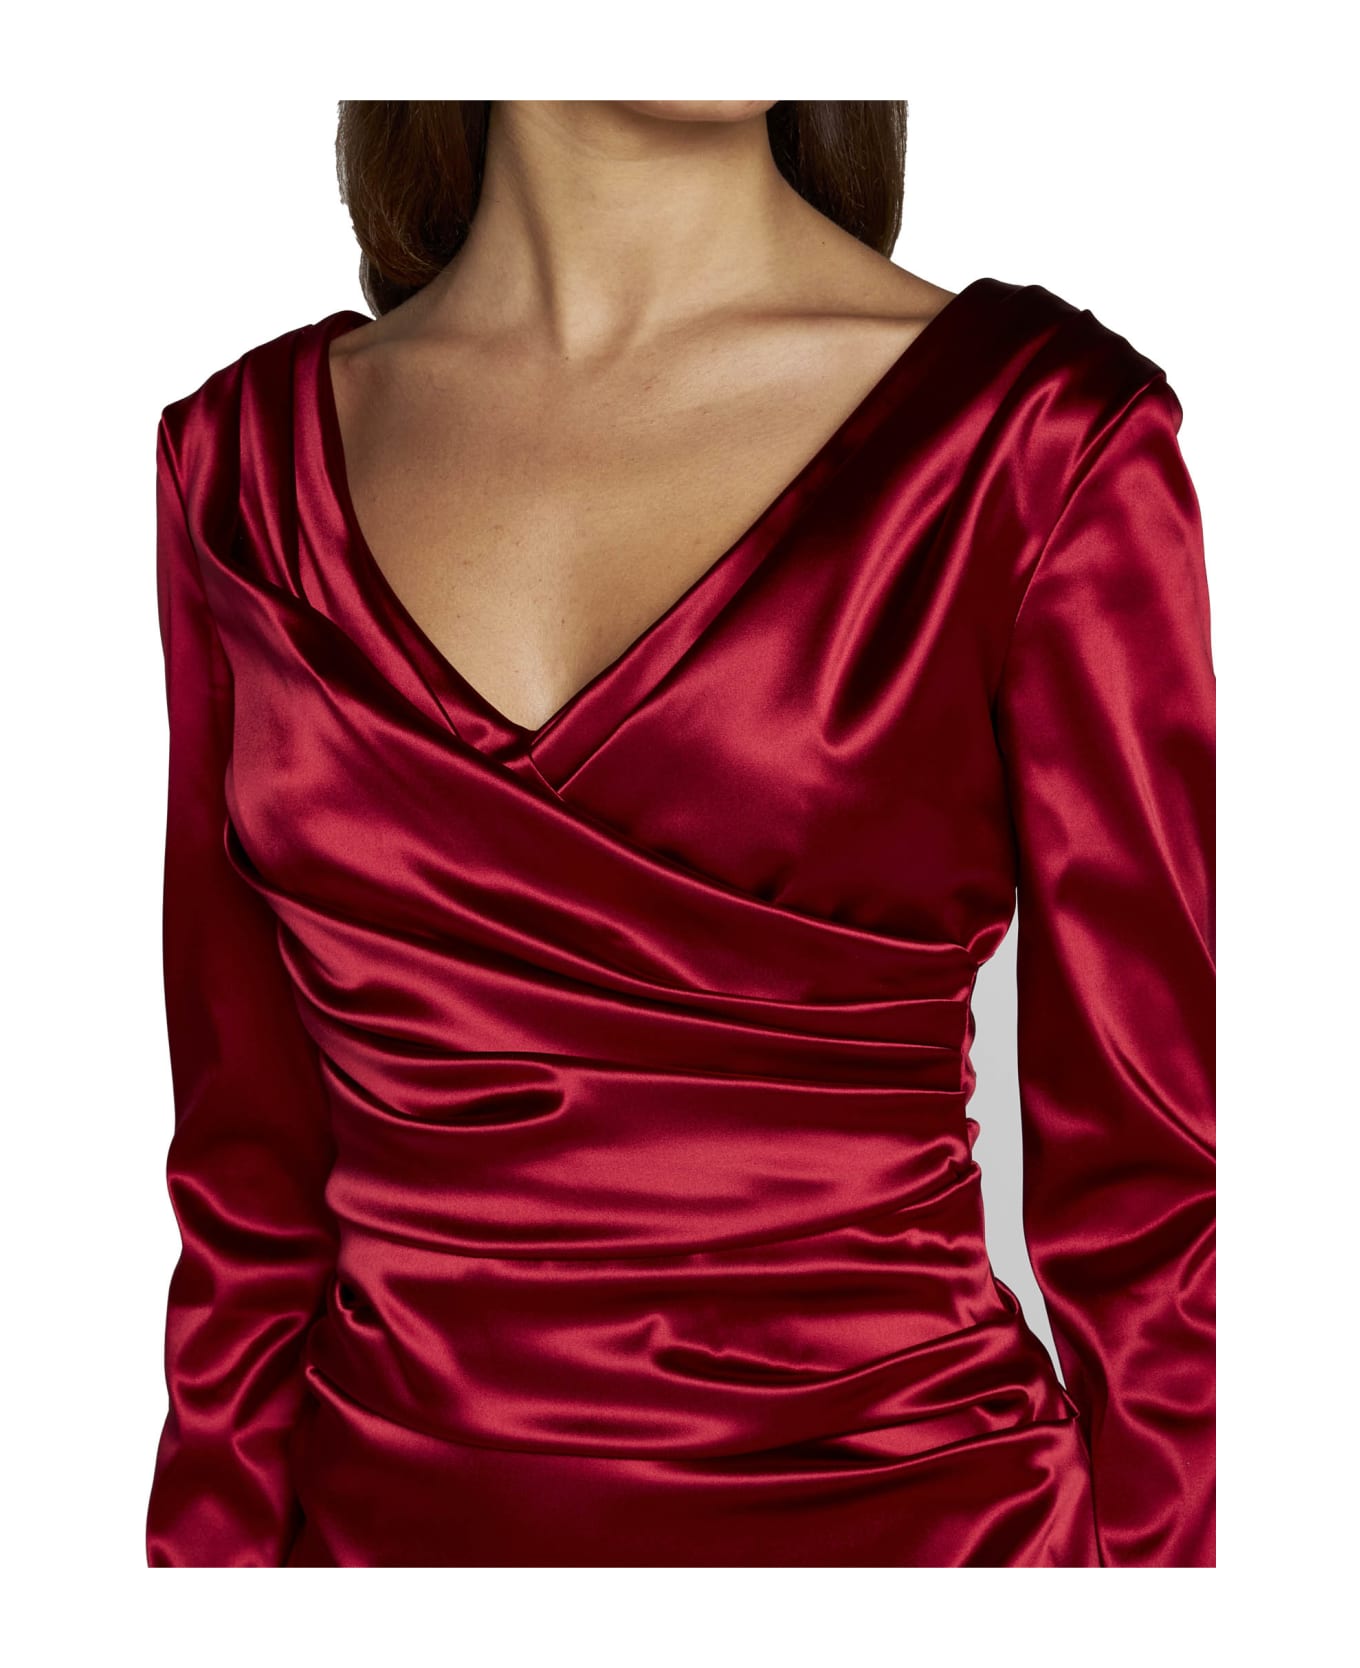 Dolce & Gabbana Draped Dress In Satin - Granata ワンピース＆ドレス